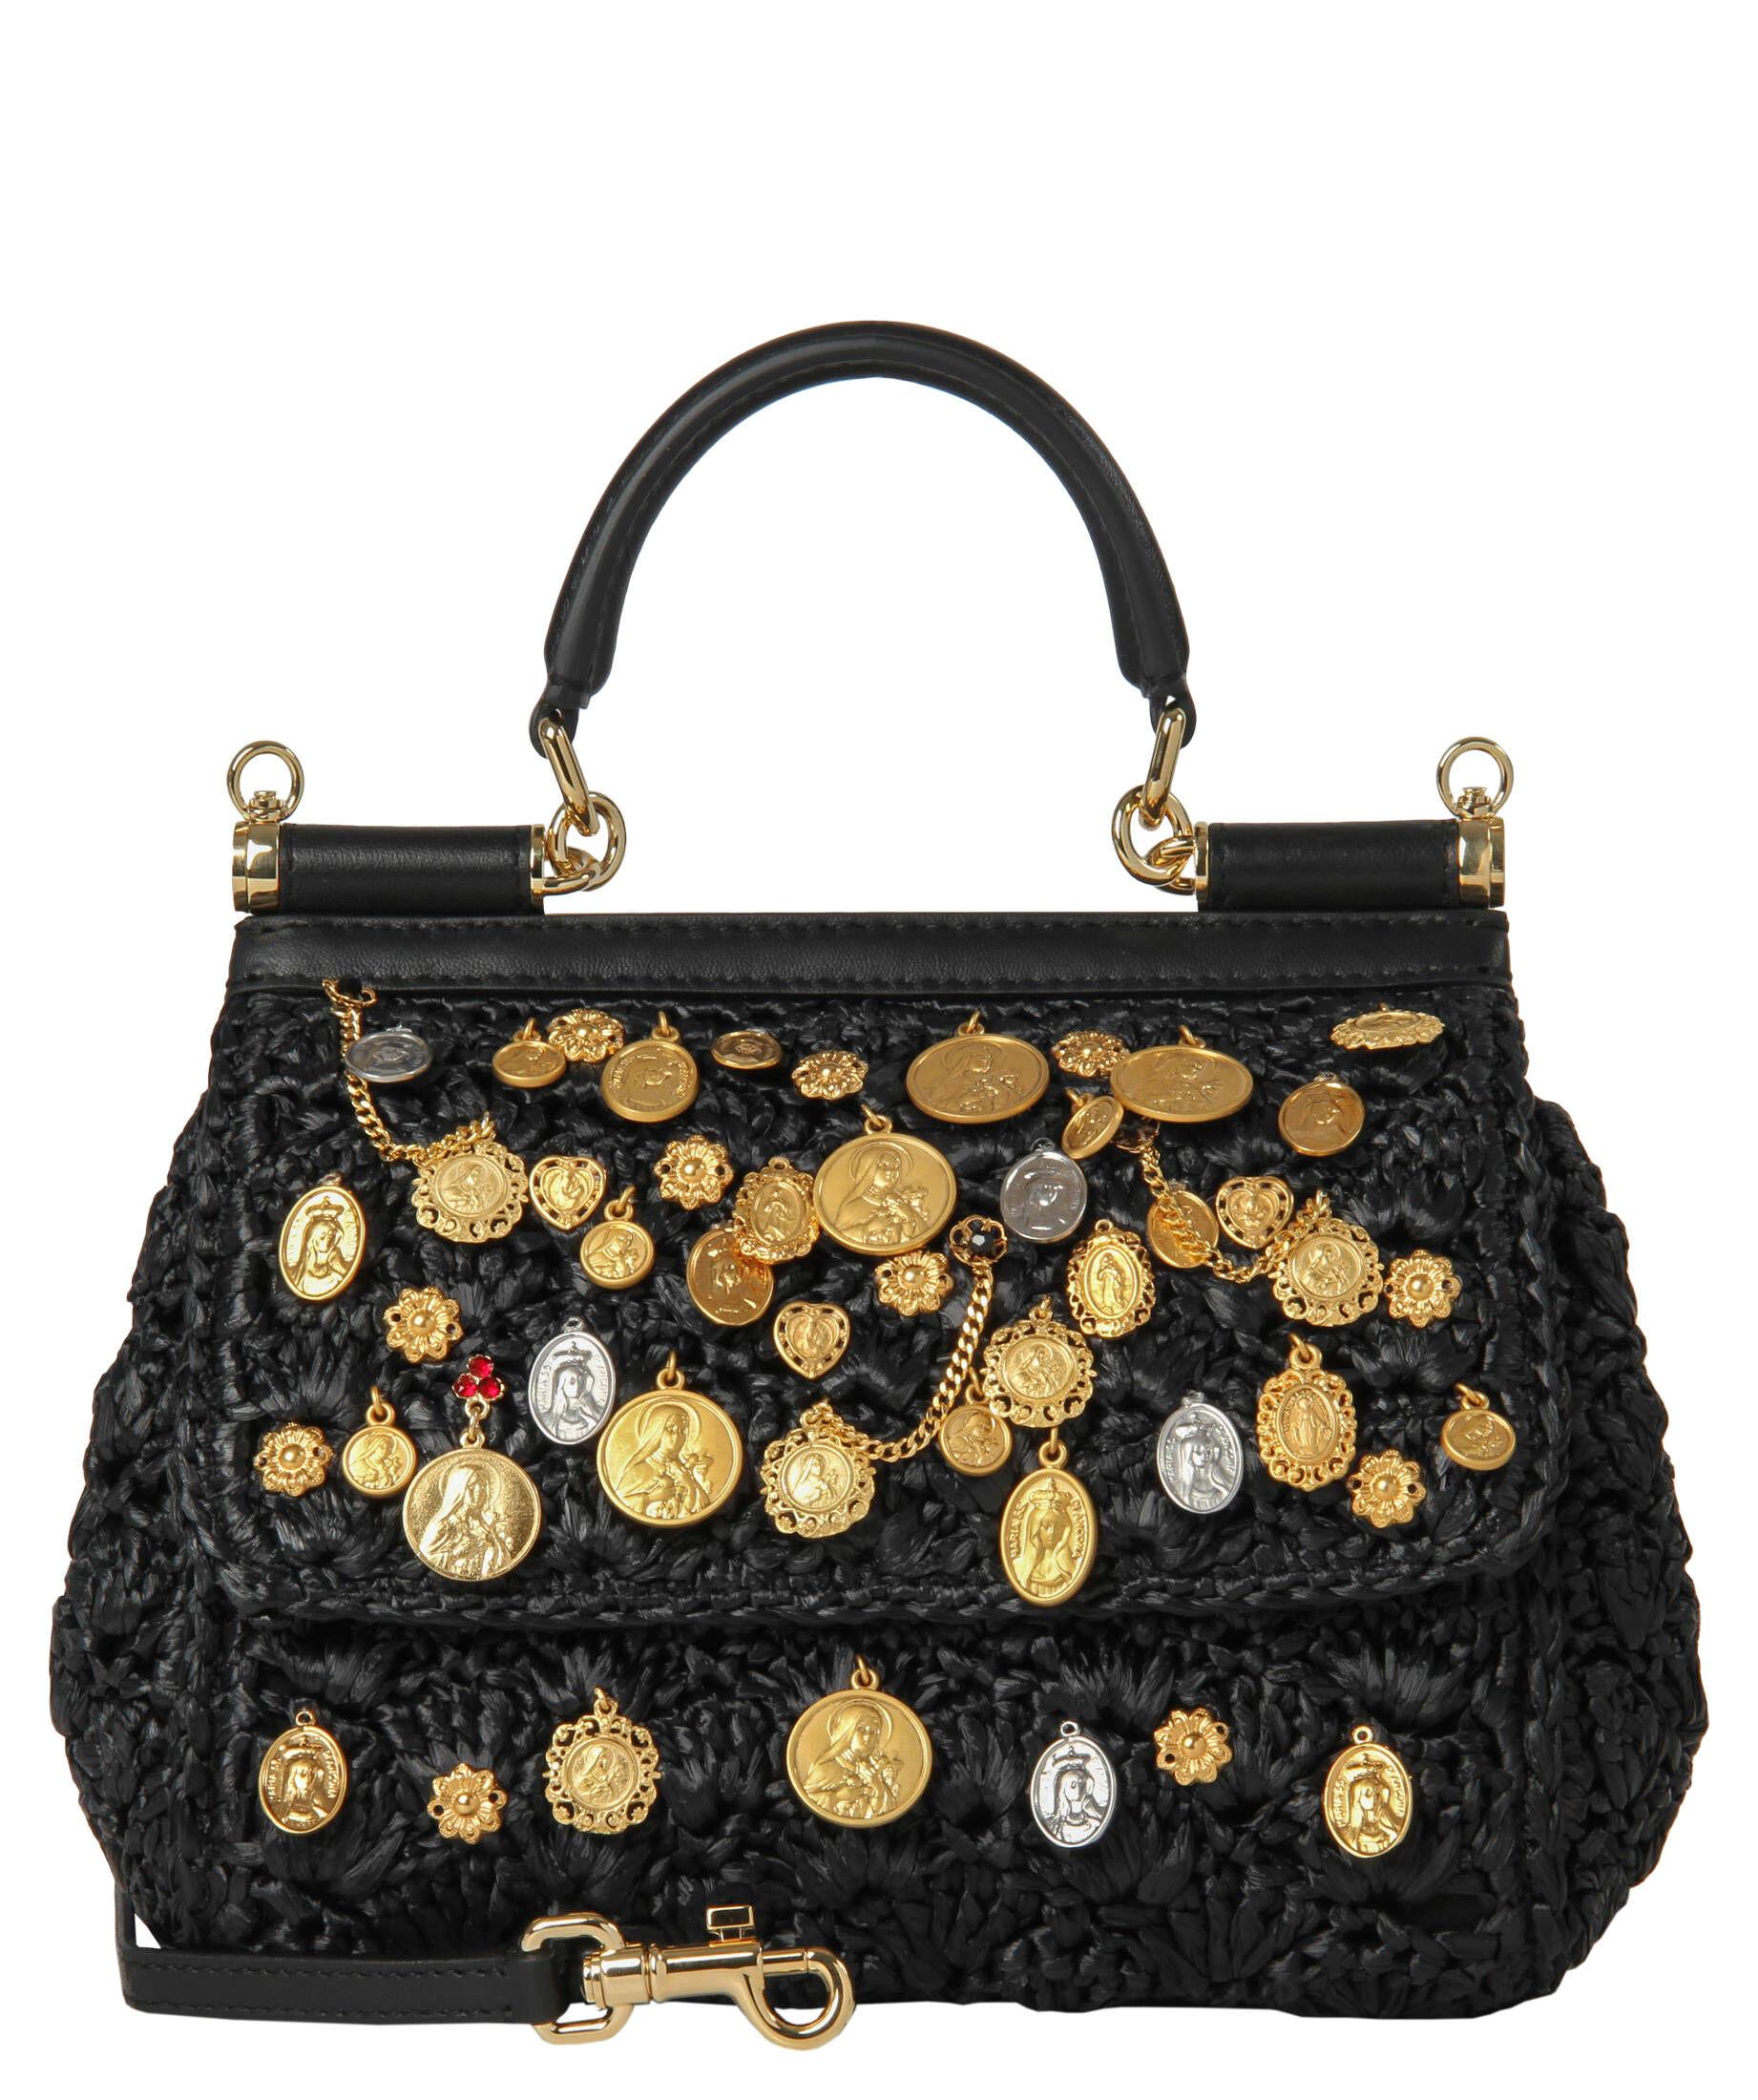 Dolce & Gabbana Handtasche Aus Dauphineleder new Sicily Damen Taschen Taschen mit Griff 